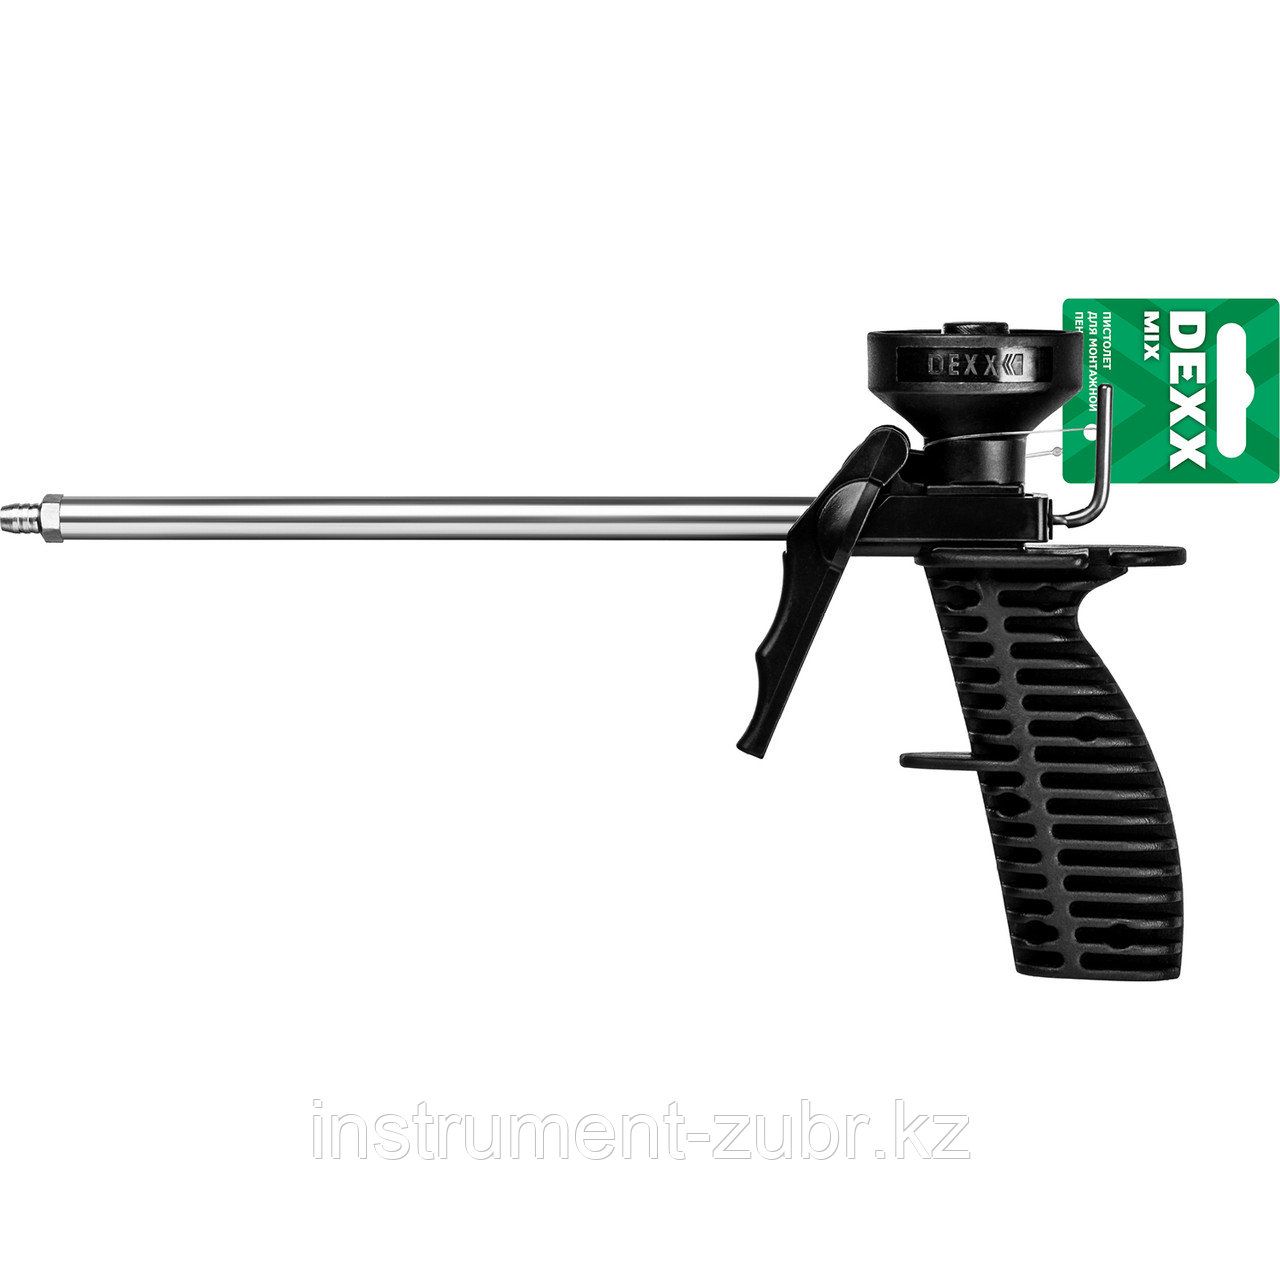 Пистолет для монтажной пены "MIX", пластиковый химически стойкий корпус, клапаны из нержавеющей стали, DEXX